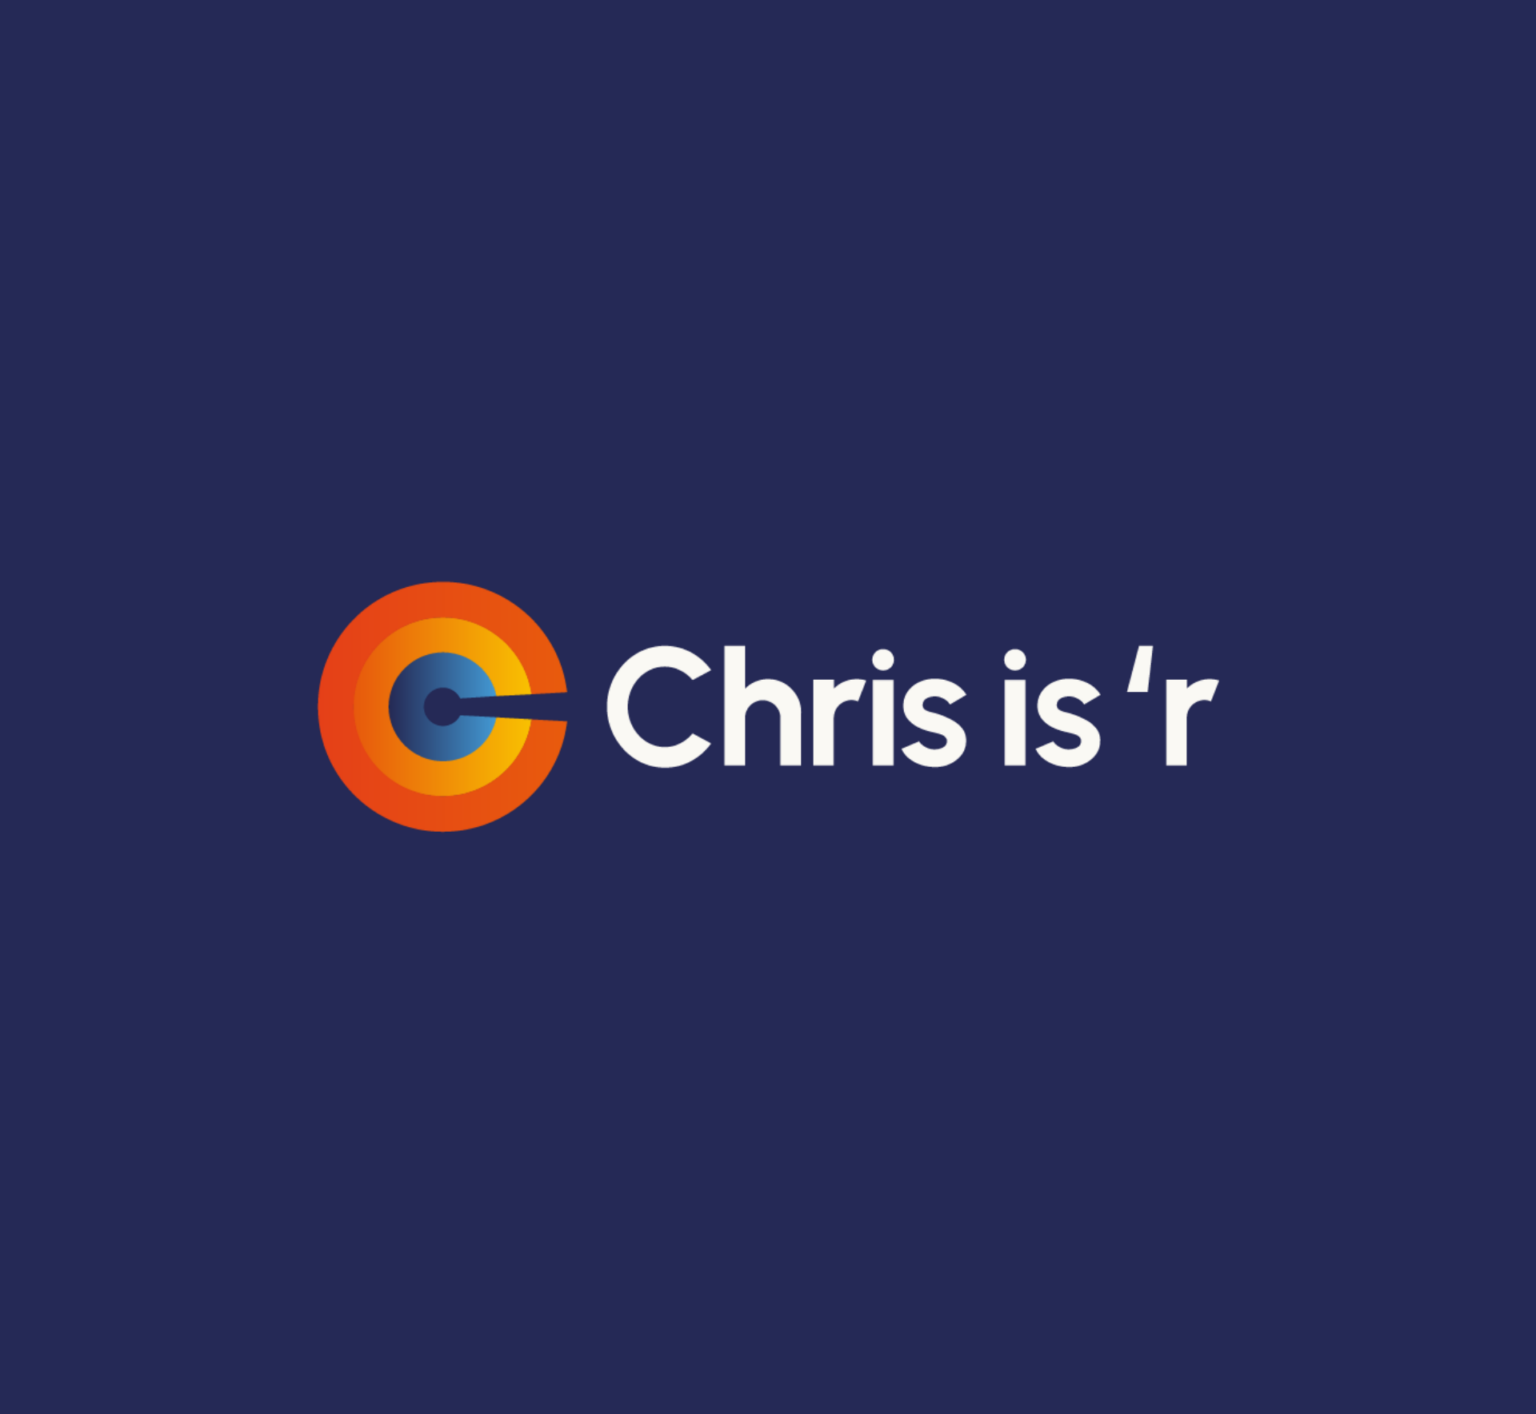 Chris-is-r